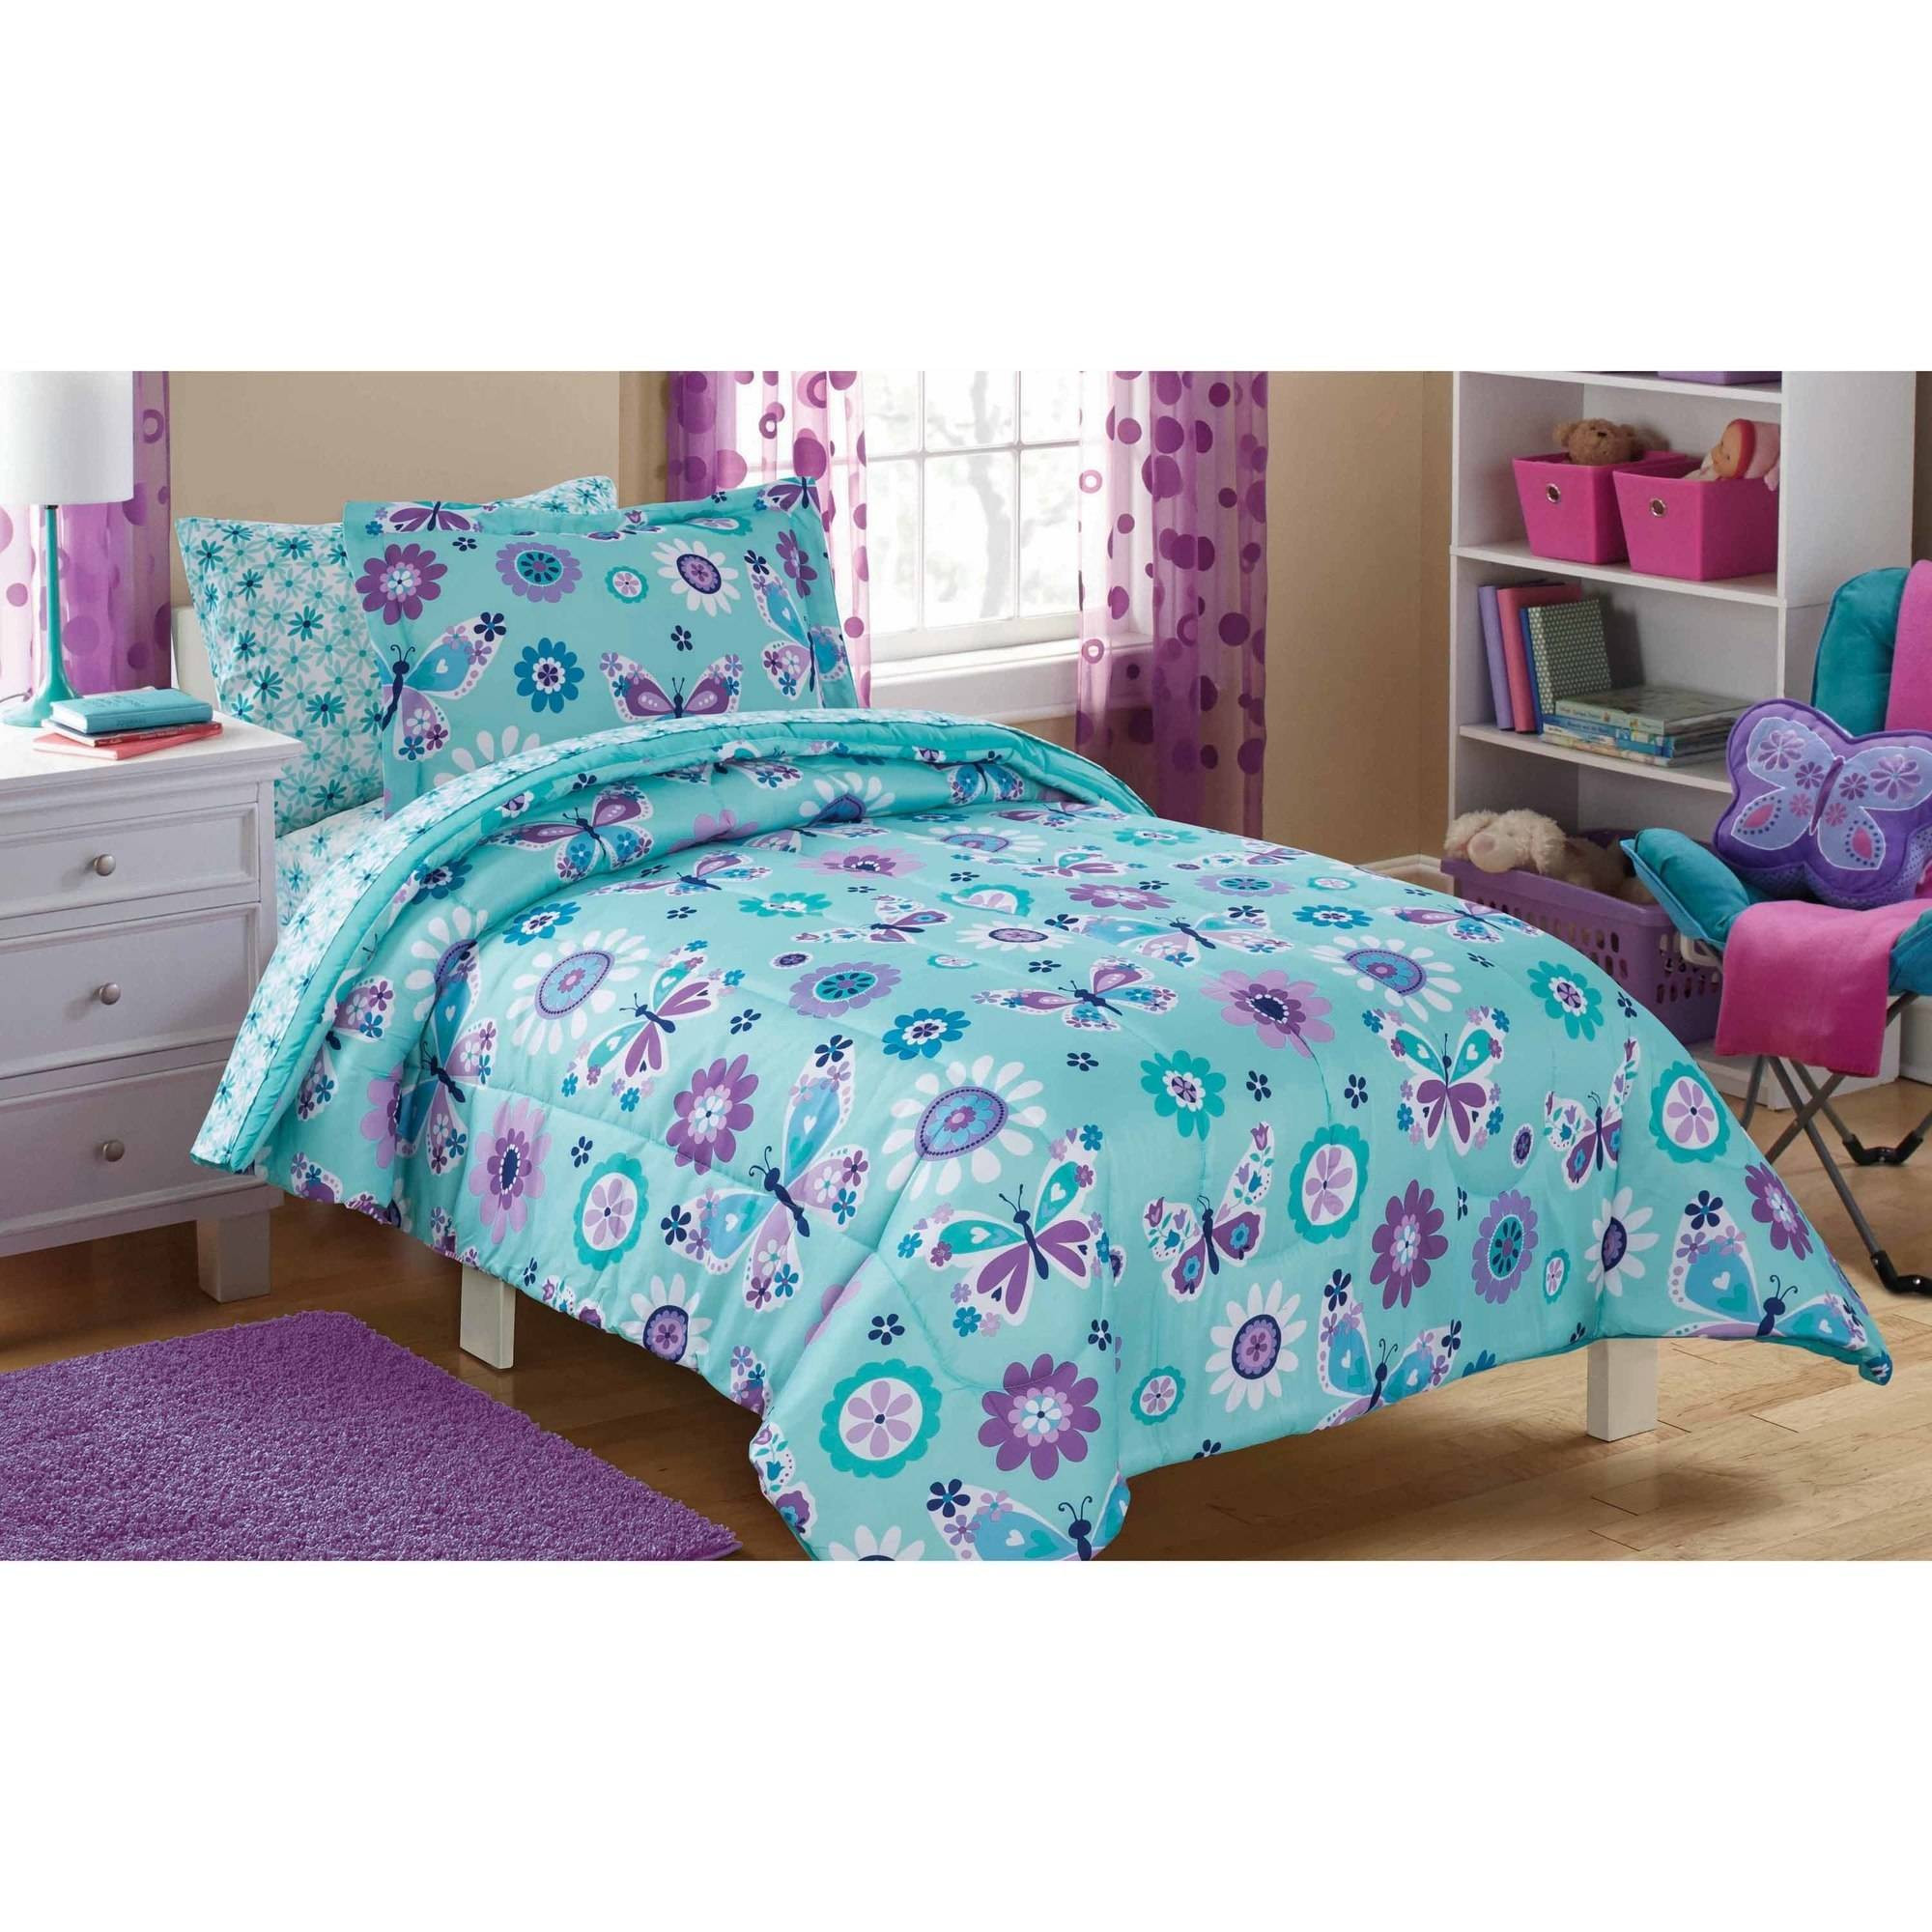 Walmart Bedroom Sets For Kids
 Mainstays Kids Butterfly Floral Bed in a Bag Bedding Set